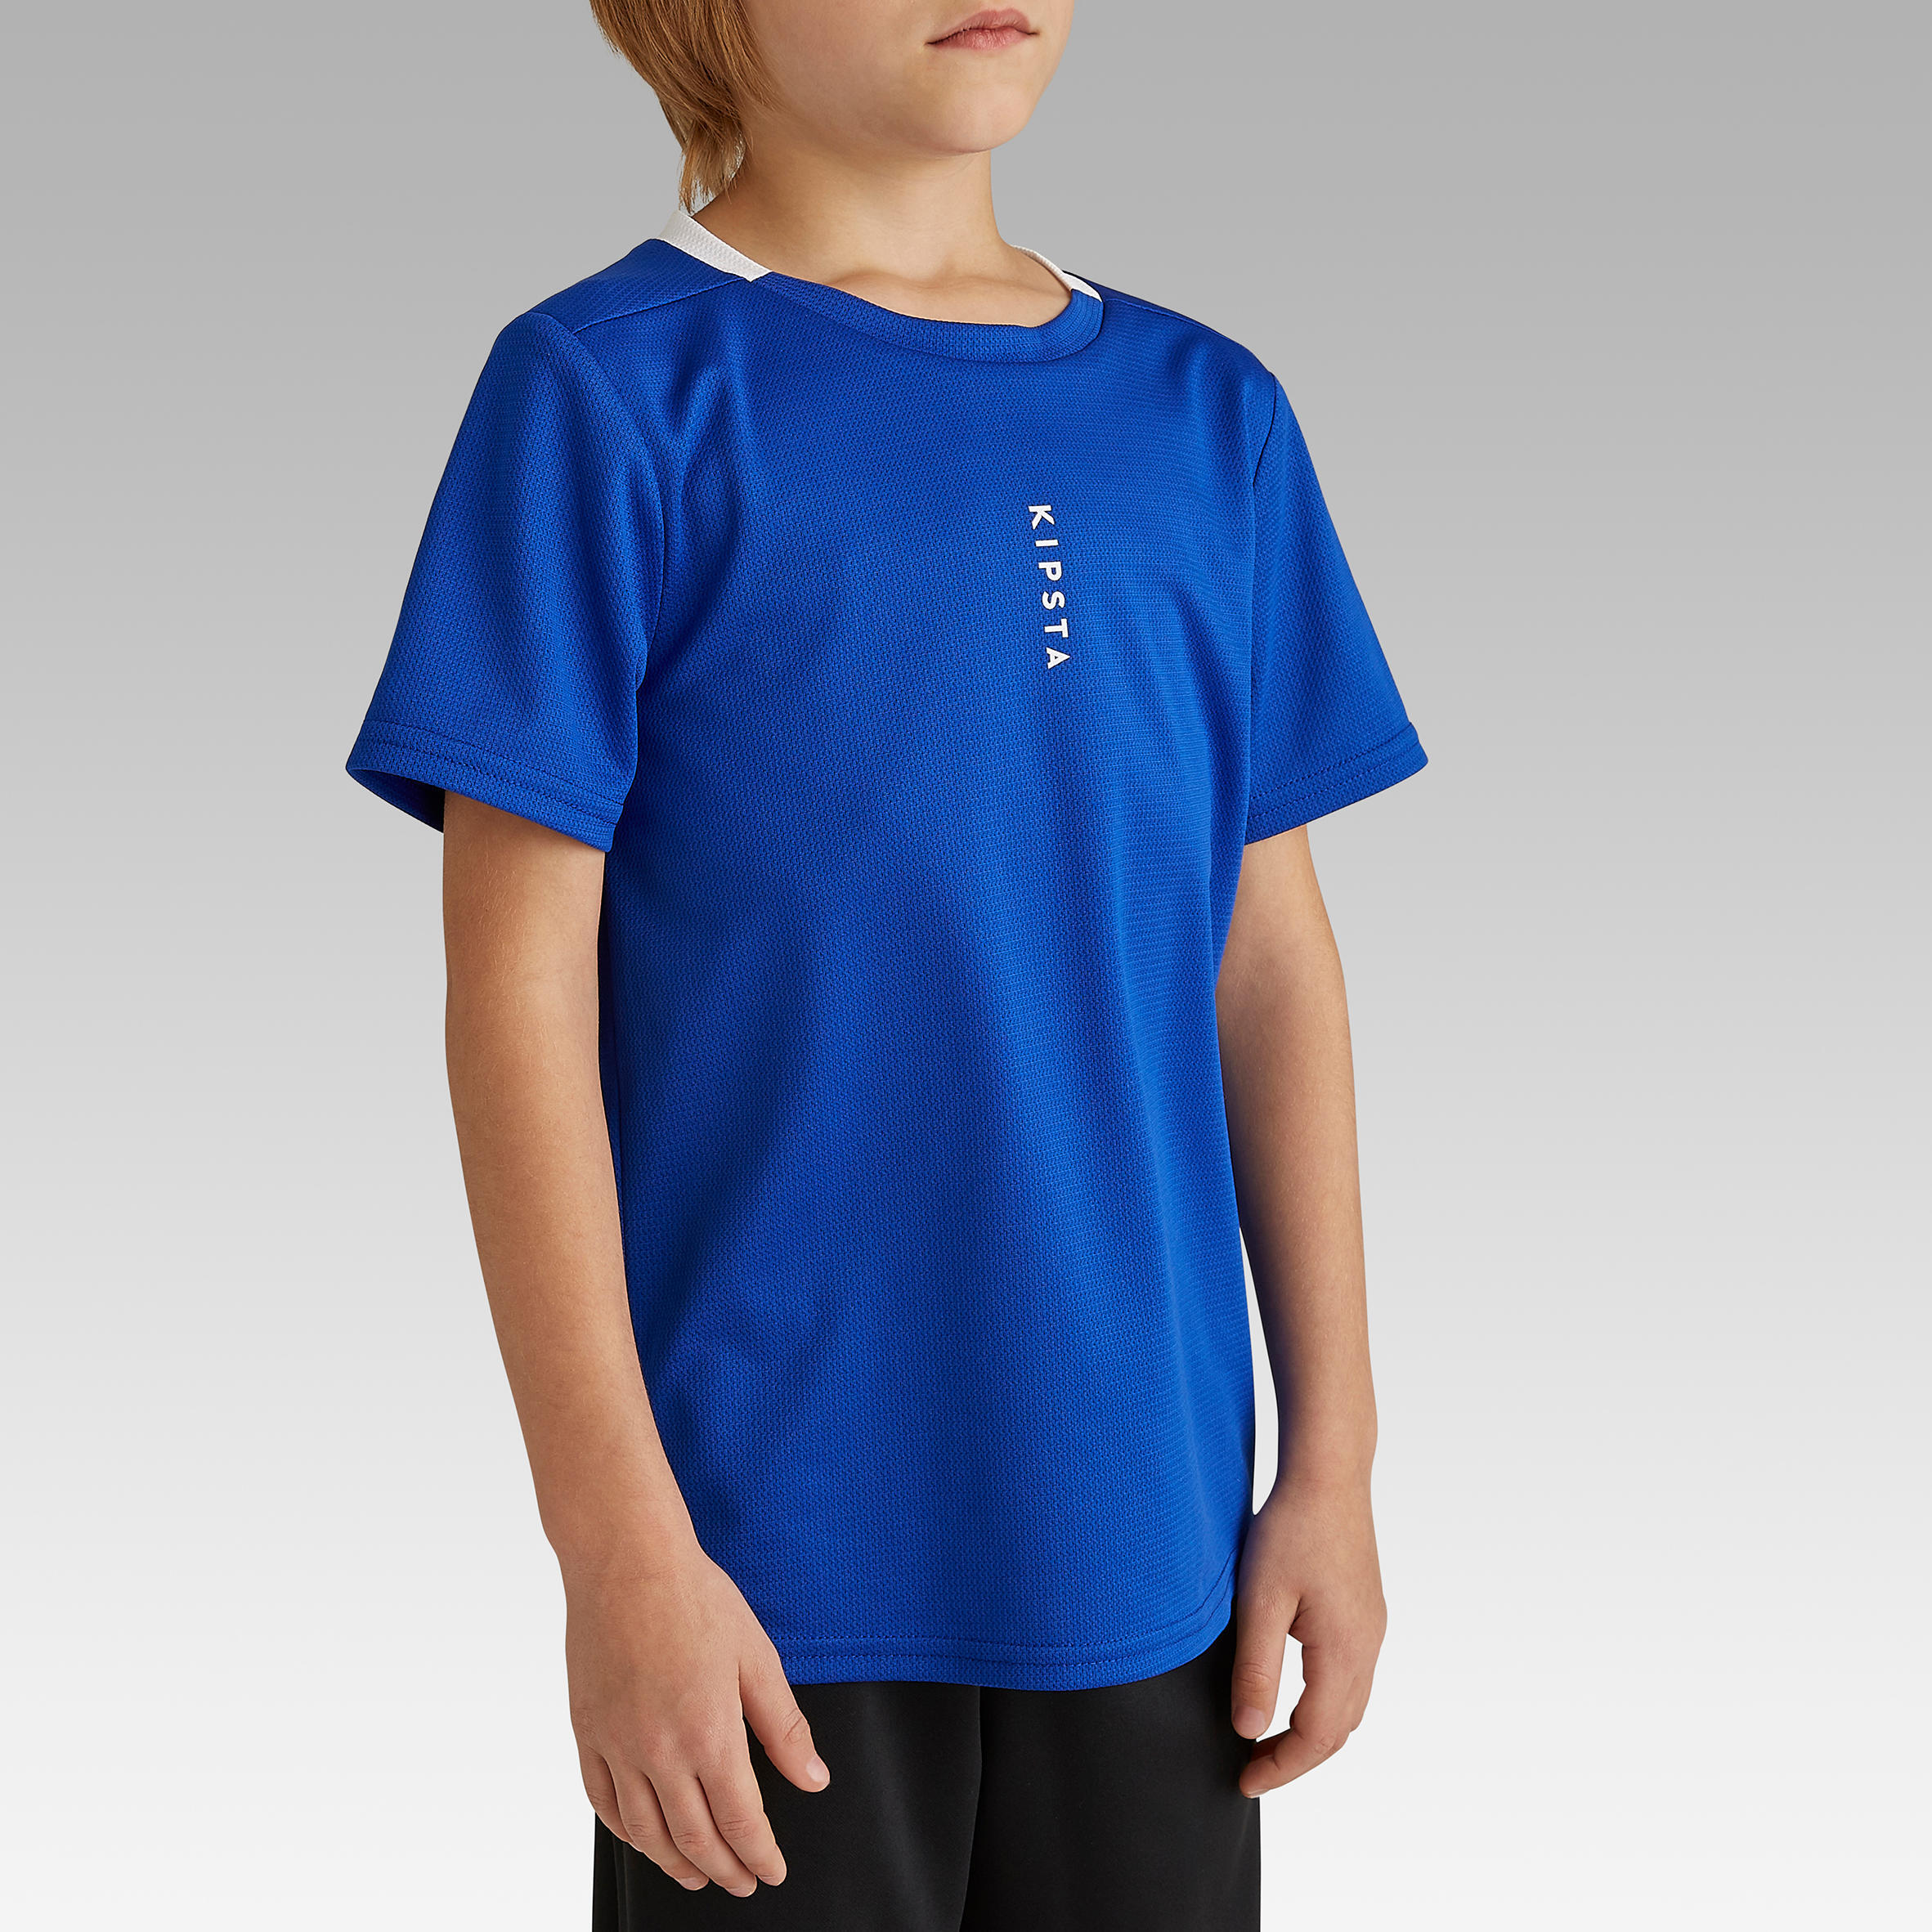 Kids' Football Shirt Essential - Blue 3/8